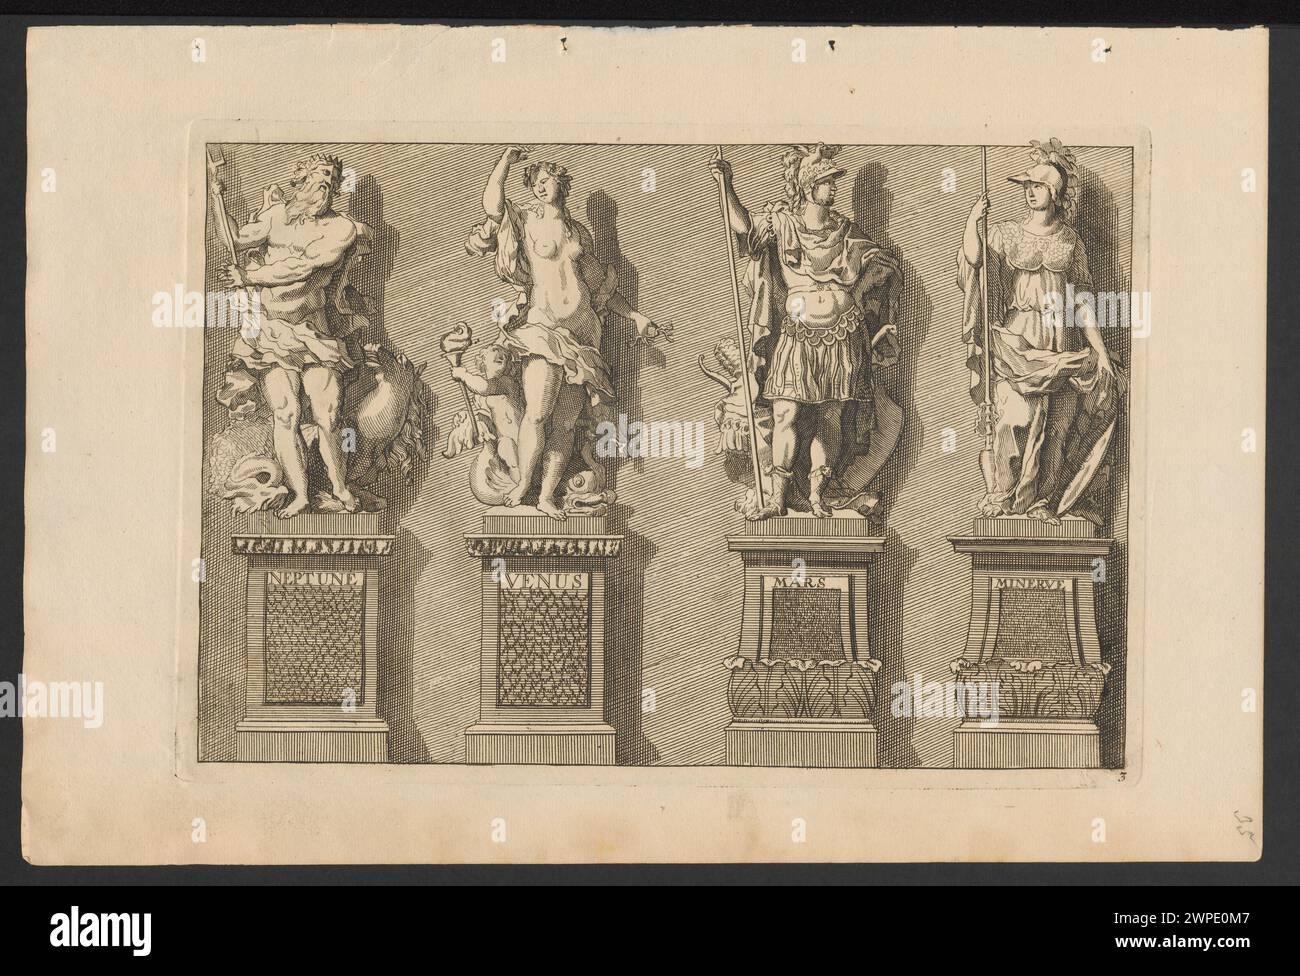 Vier Slots: Neptun, Venus, Mars, Minert; unbekannt, Marot, Daniel (1661-1752; St.); nach 1703 (1663-00-00-1752-00);Aphrodite (Mitol.), Athena (Mitol.), Frankreich, Magdalenaea (Sammlung), Mars (Mitol.), Minerva (Mitol.), Neptun (Mitol.), Poseidon (Mitol.), Schlesisches Museum der Bilden Künste (Wrocław - 1880-1945) - Sammlung, Venus (Mitol.), antike Gottheiten, Französisch (Kultur), Statuen, Projekte, Skulpturen Stockfoto